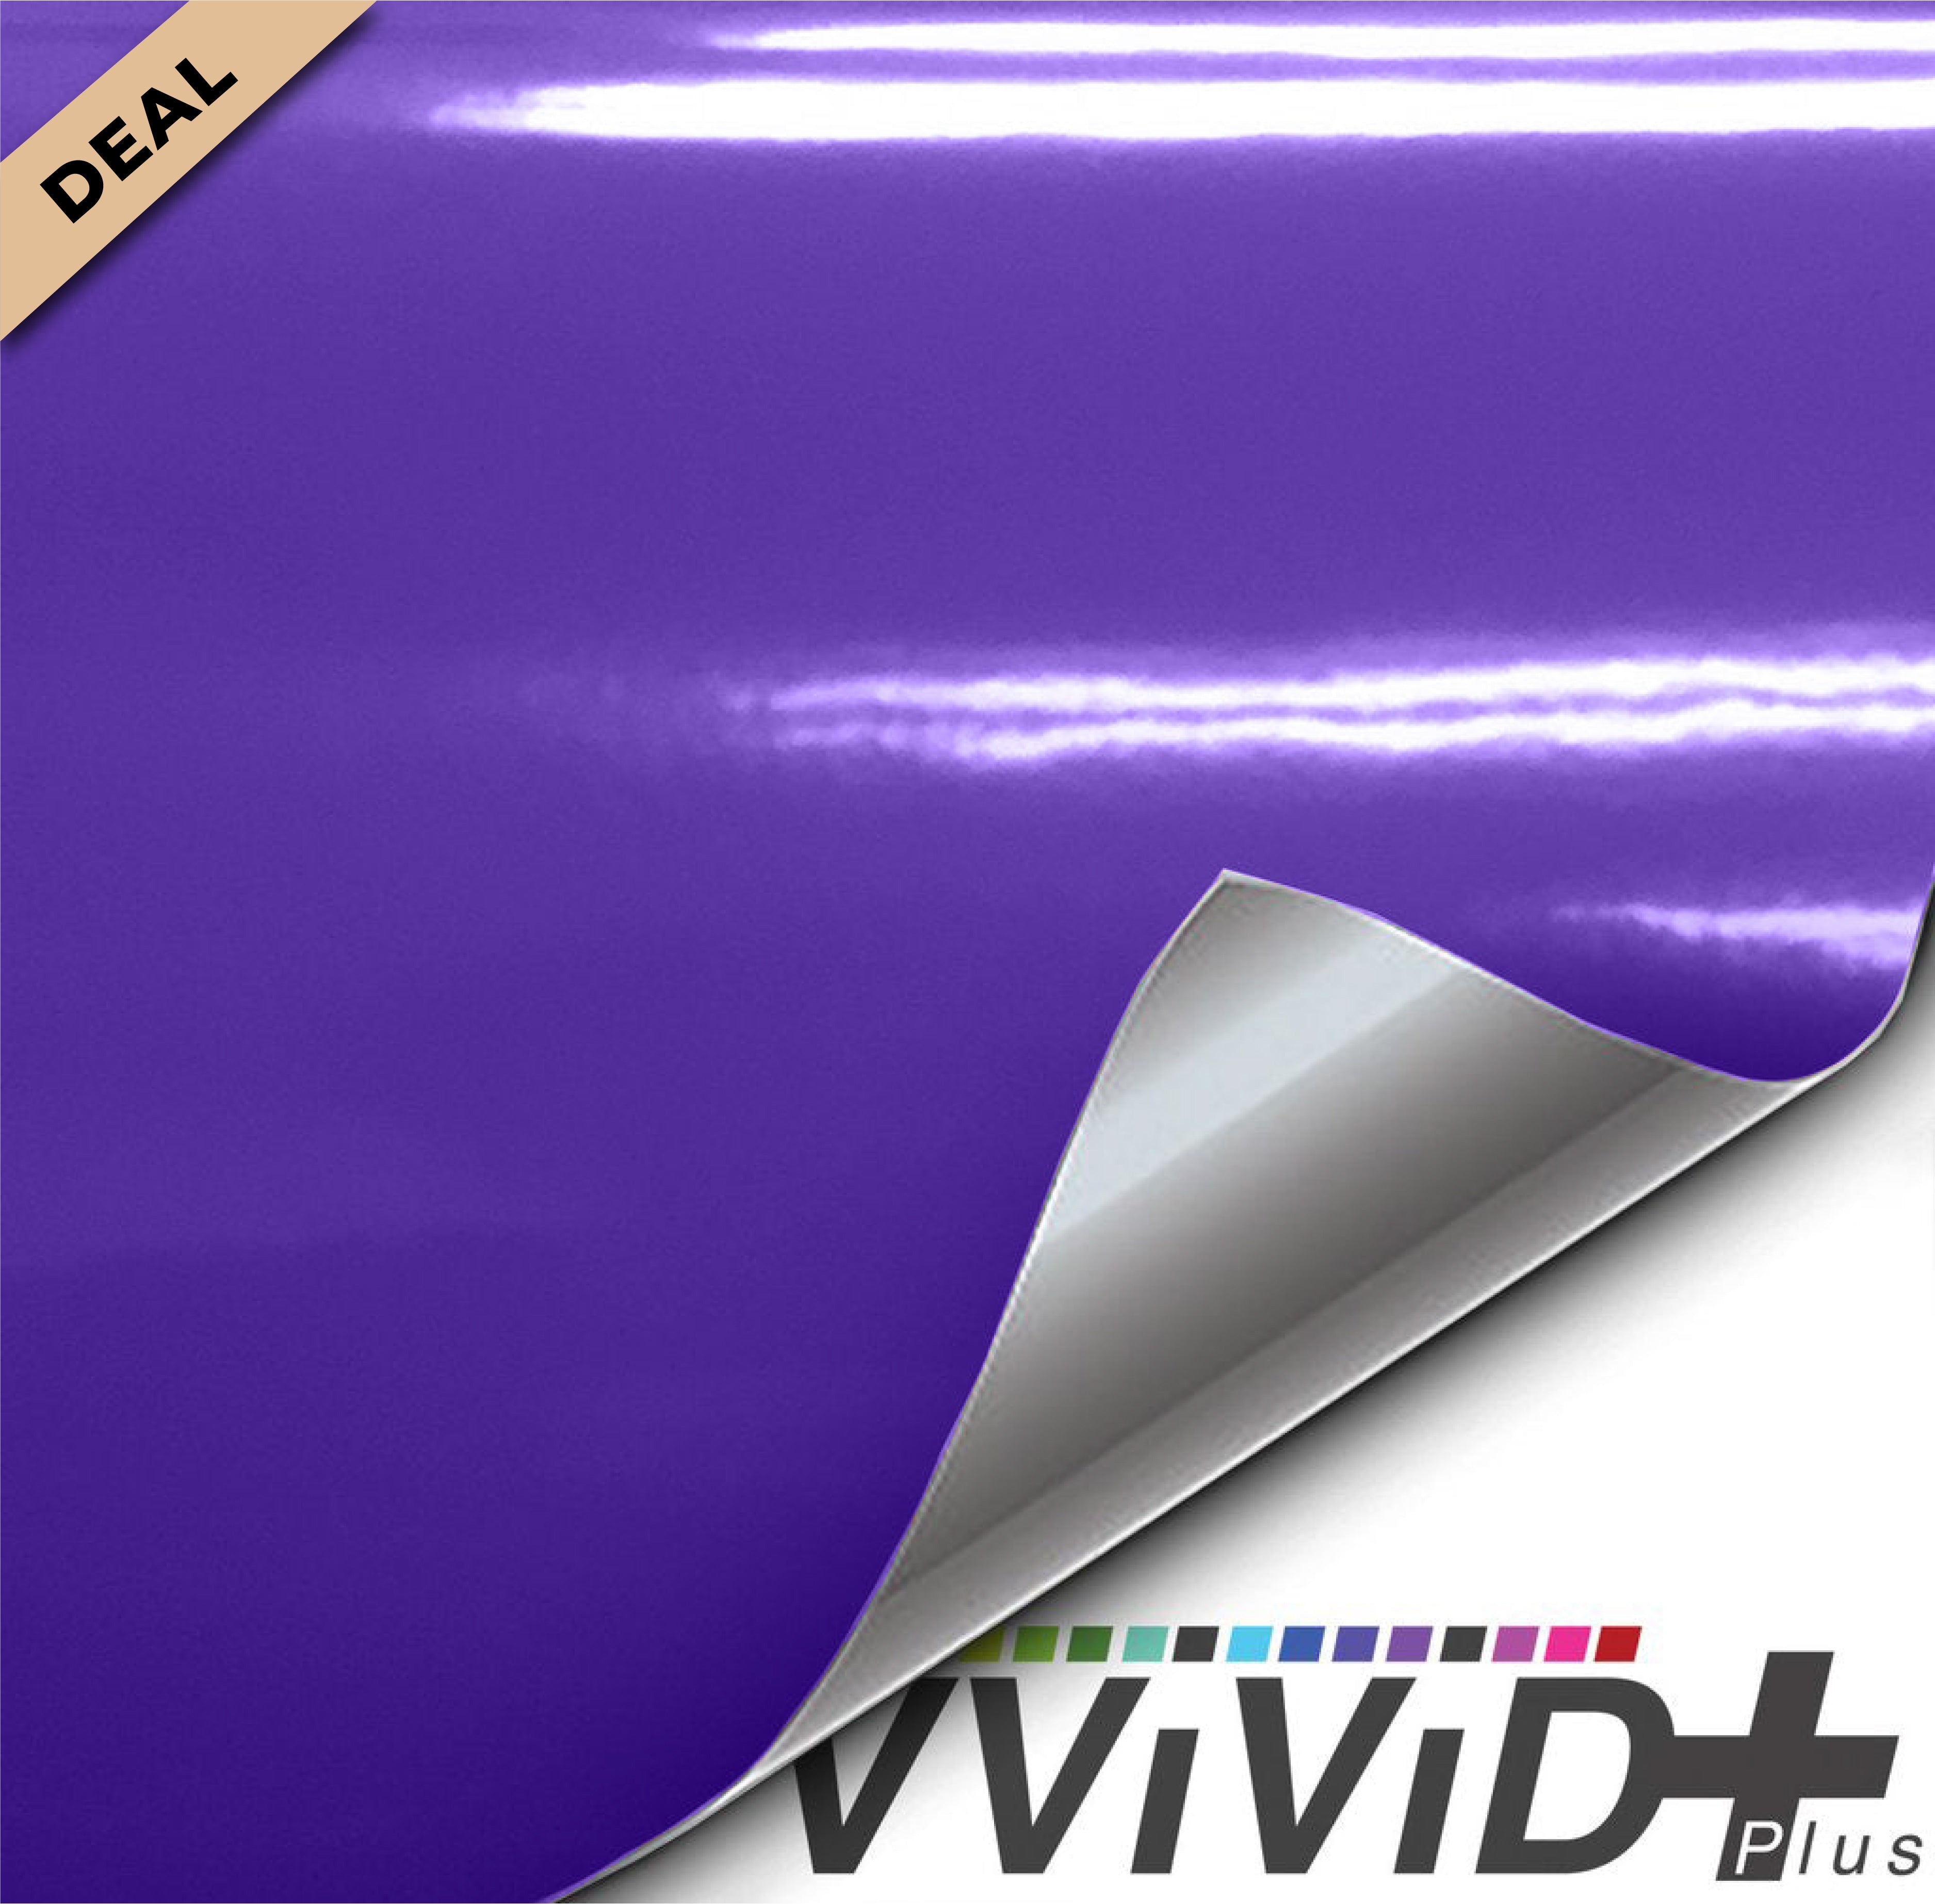 VViViD+ Gloss Midnight Purple (10ft x 5ft) - W.D